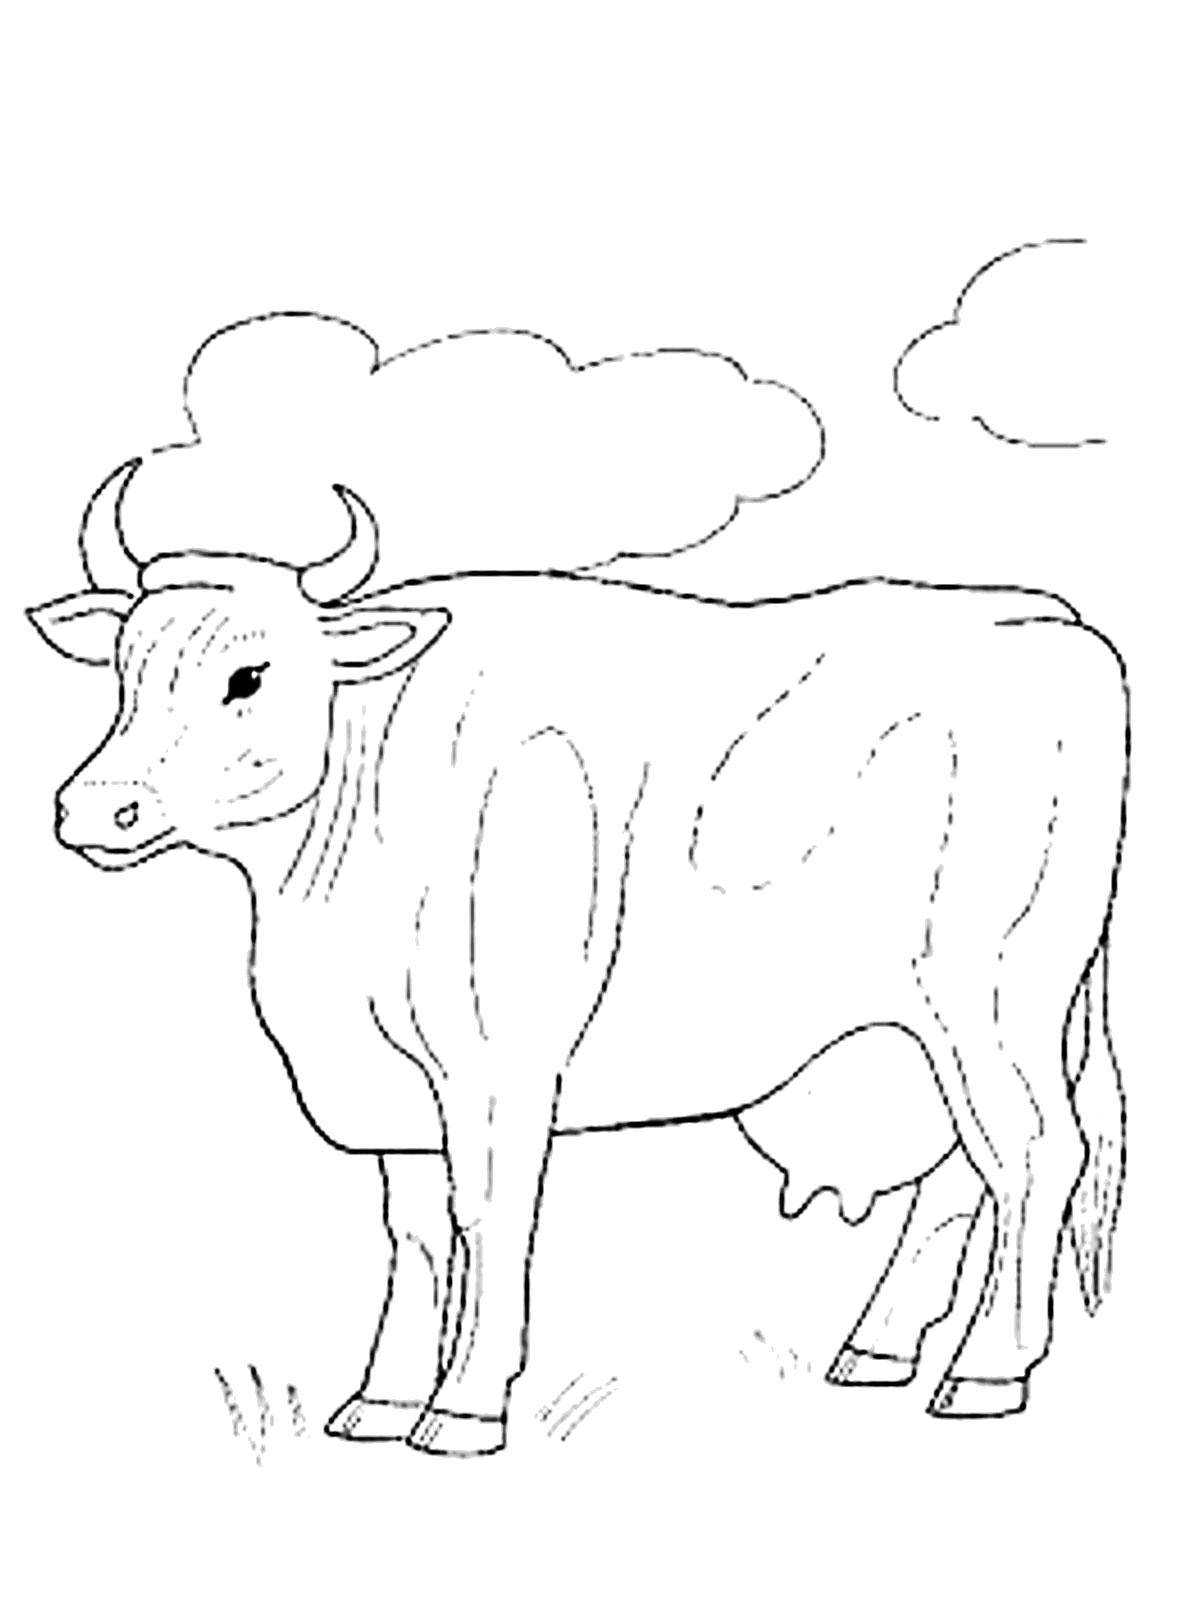 Как легко нарисовать быка или корову - лайфхакер